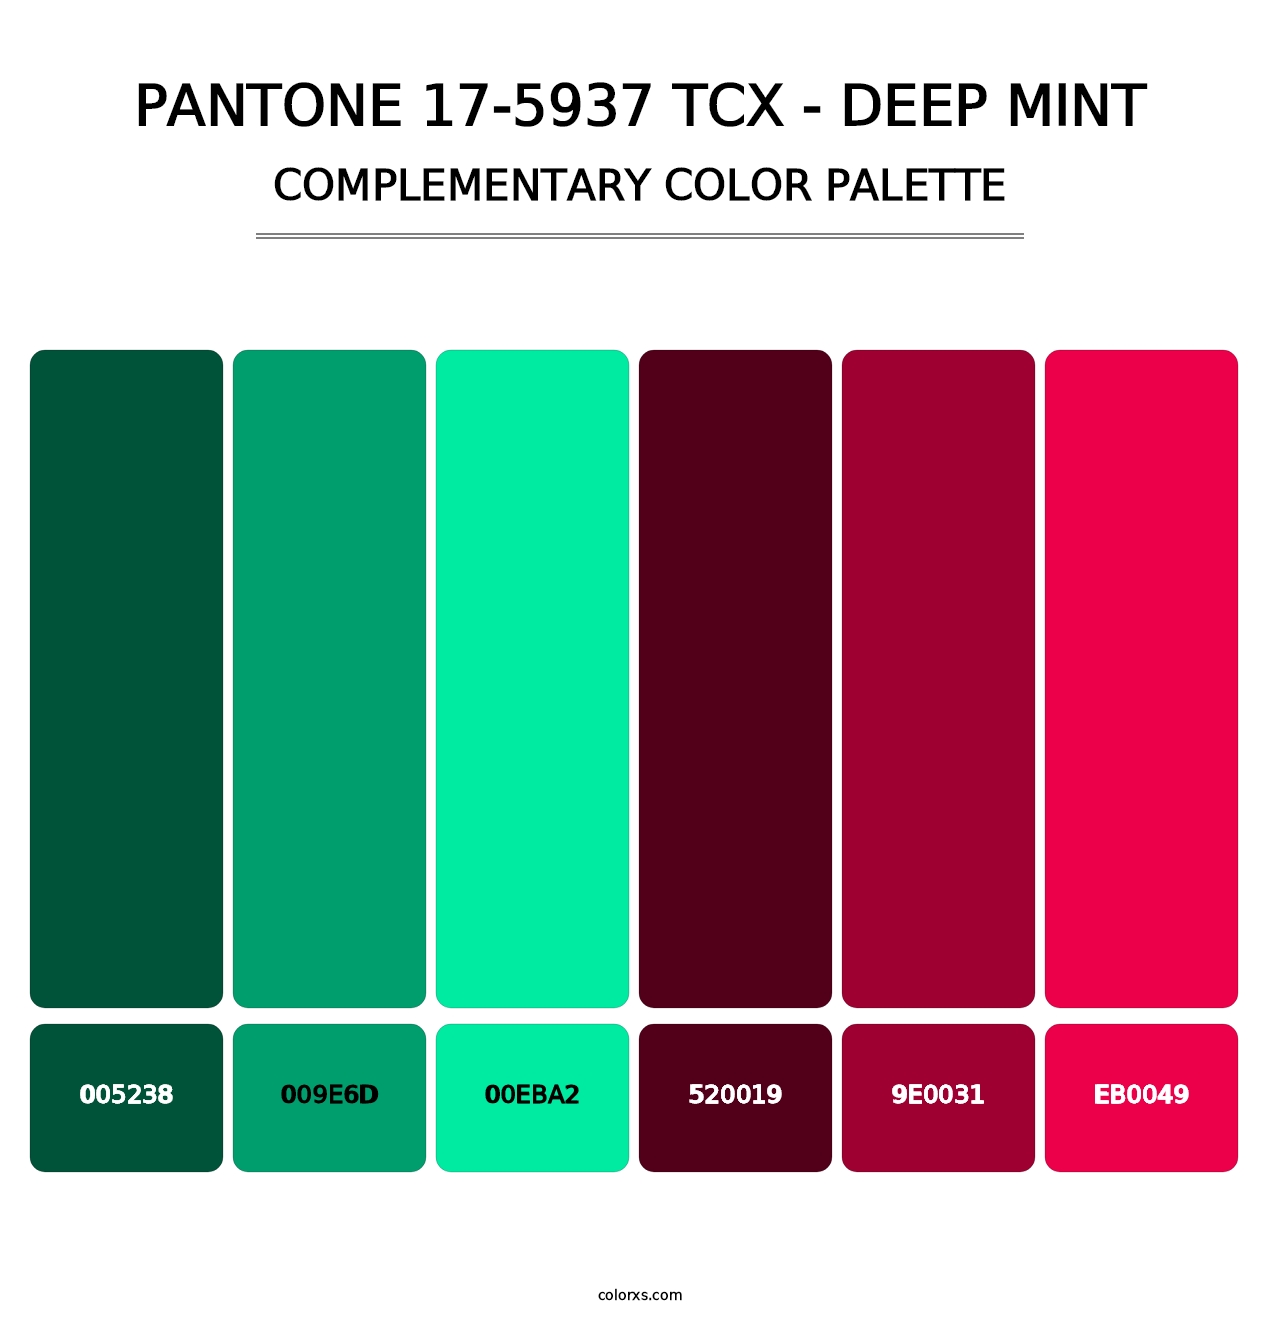 PANTONE 17-5937 TCX - Deep Mint - Complementary Color Palette